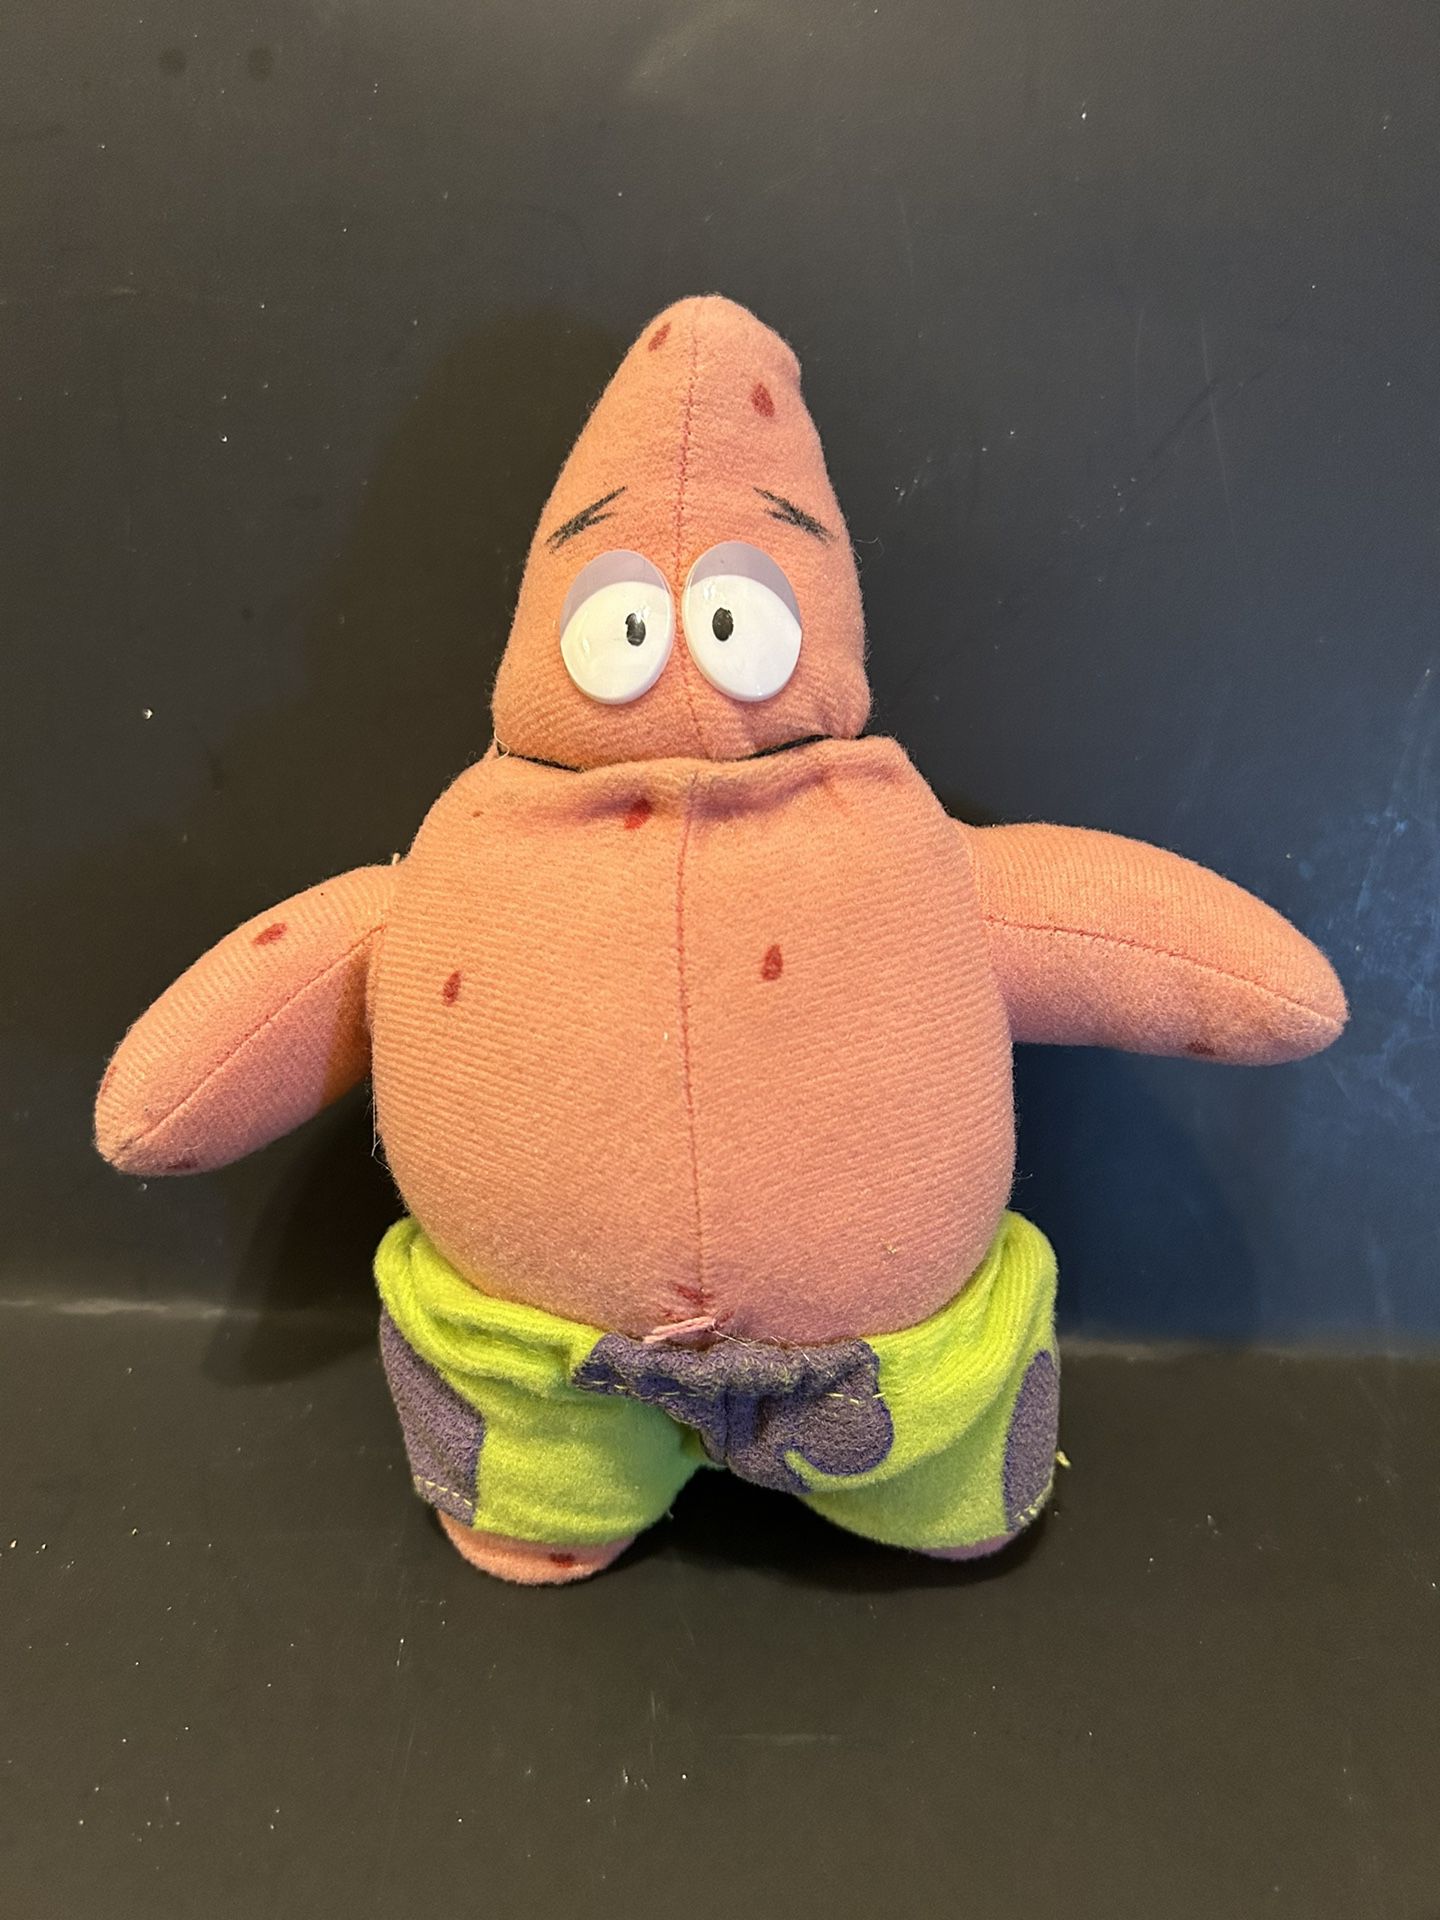 Sponge Bob Square Pants Patrick 